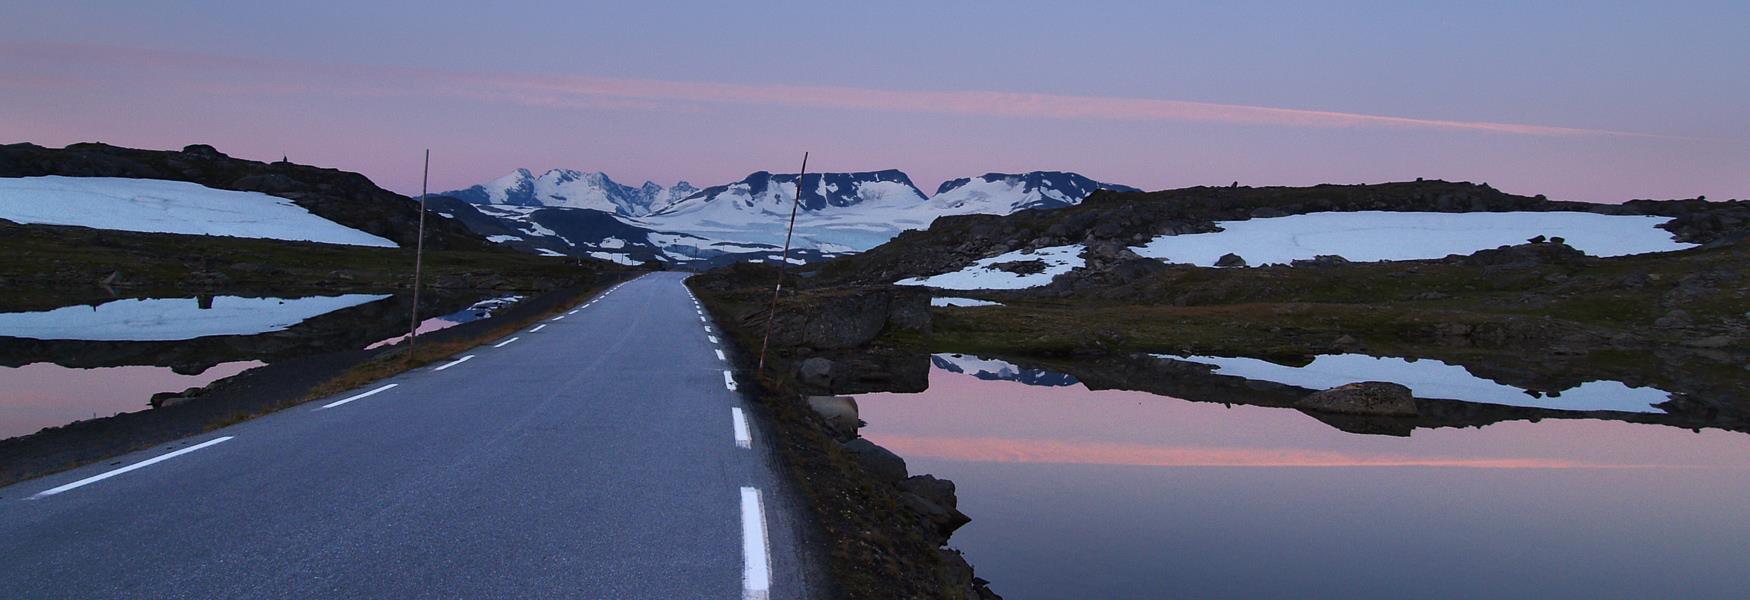 Die Norwegische Landschaftsroute Sognefjellet